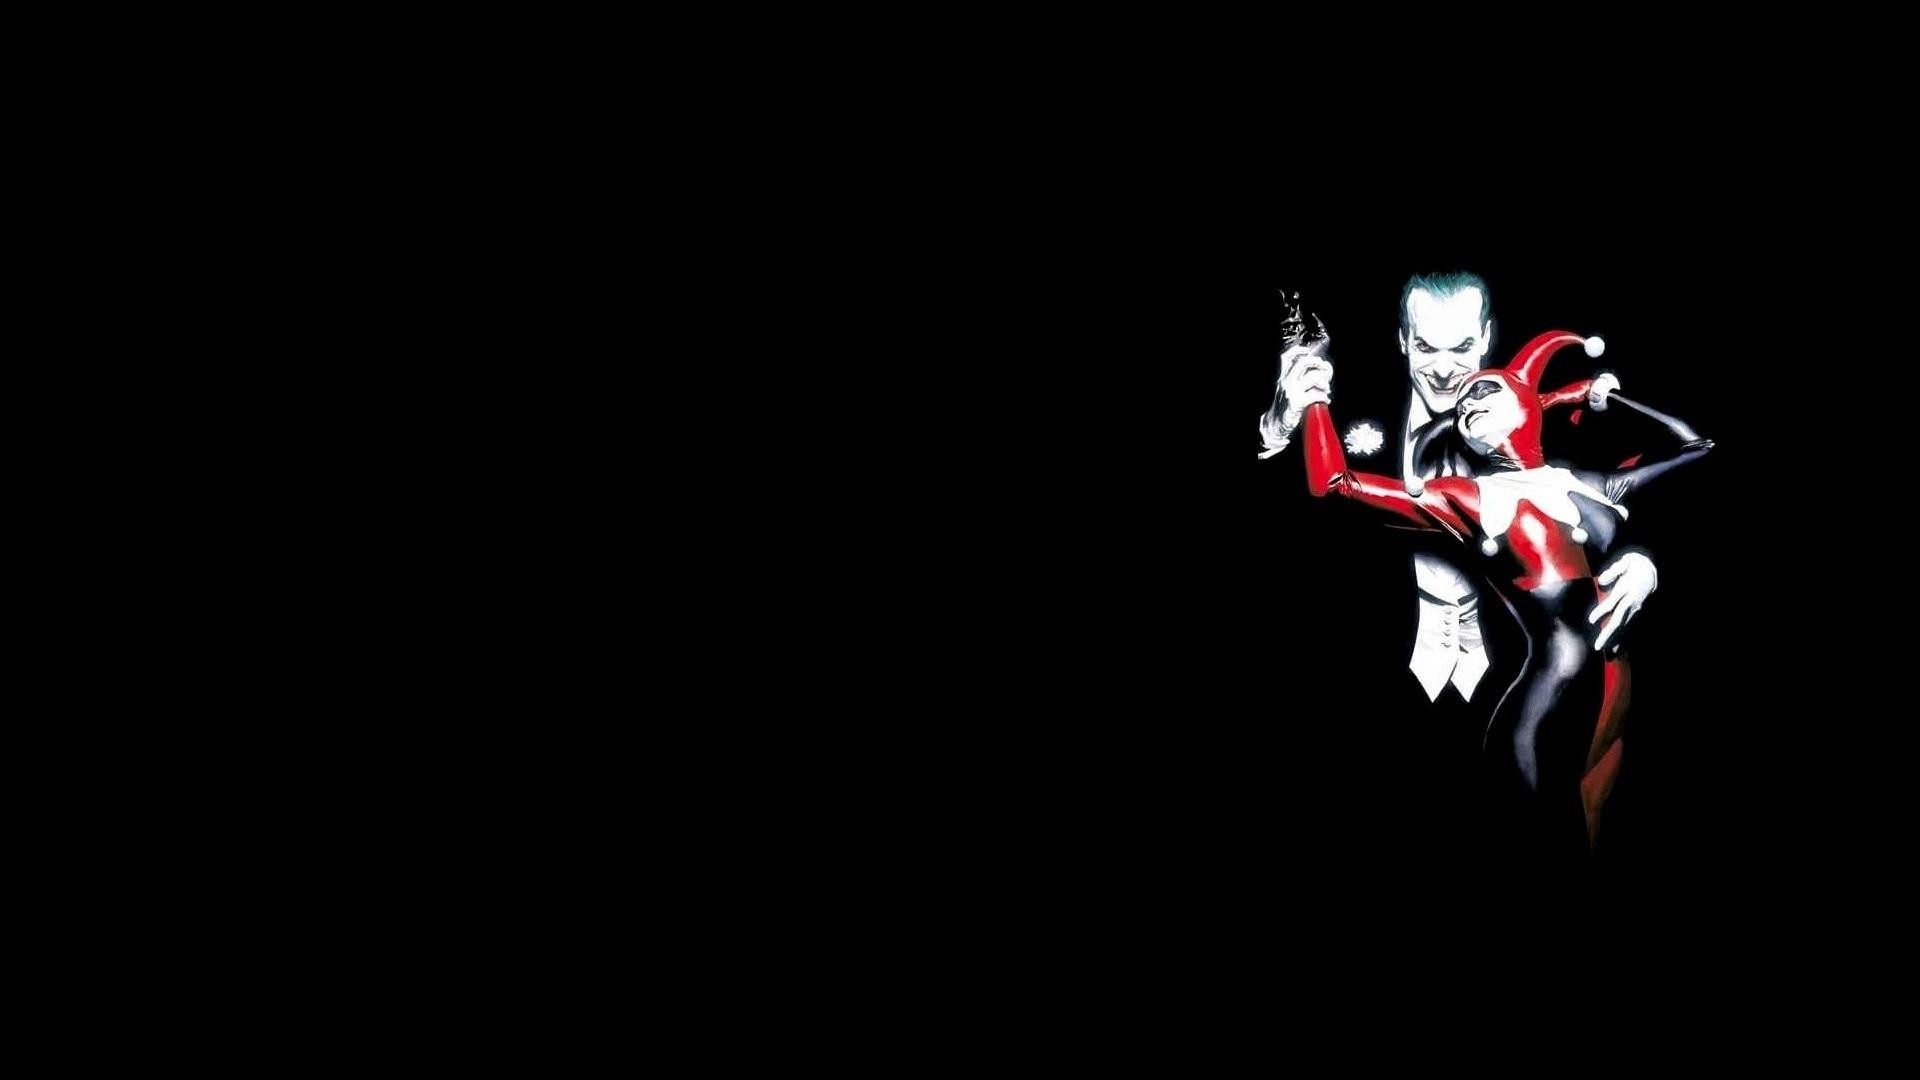 Joker and harley quinn wallpaper